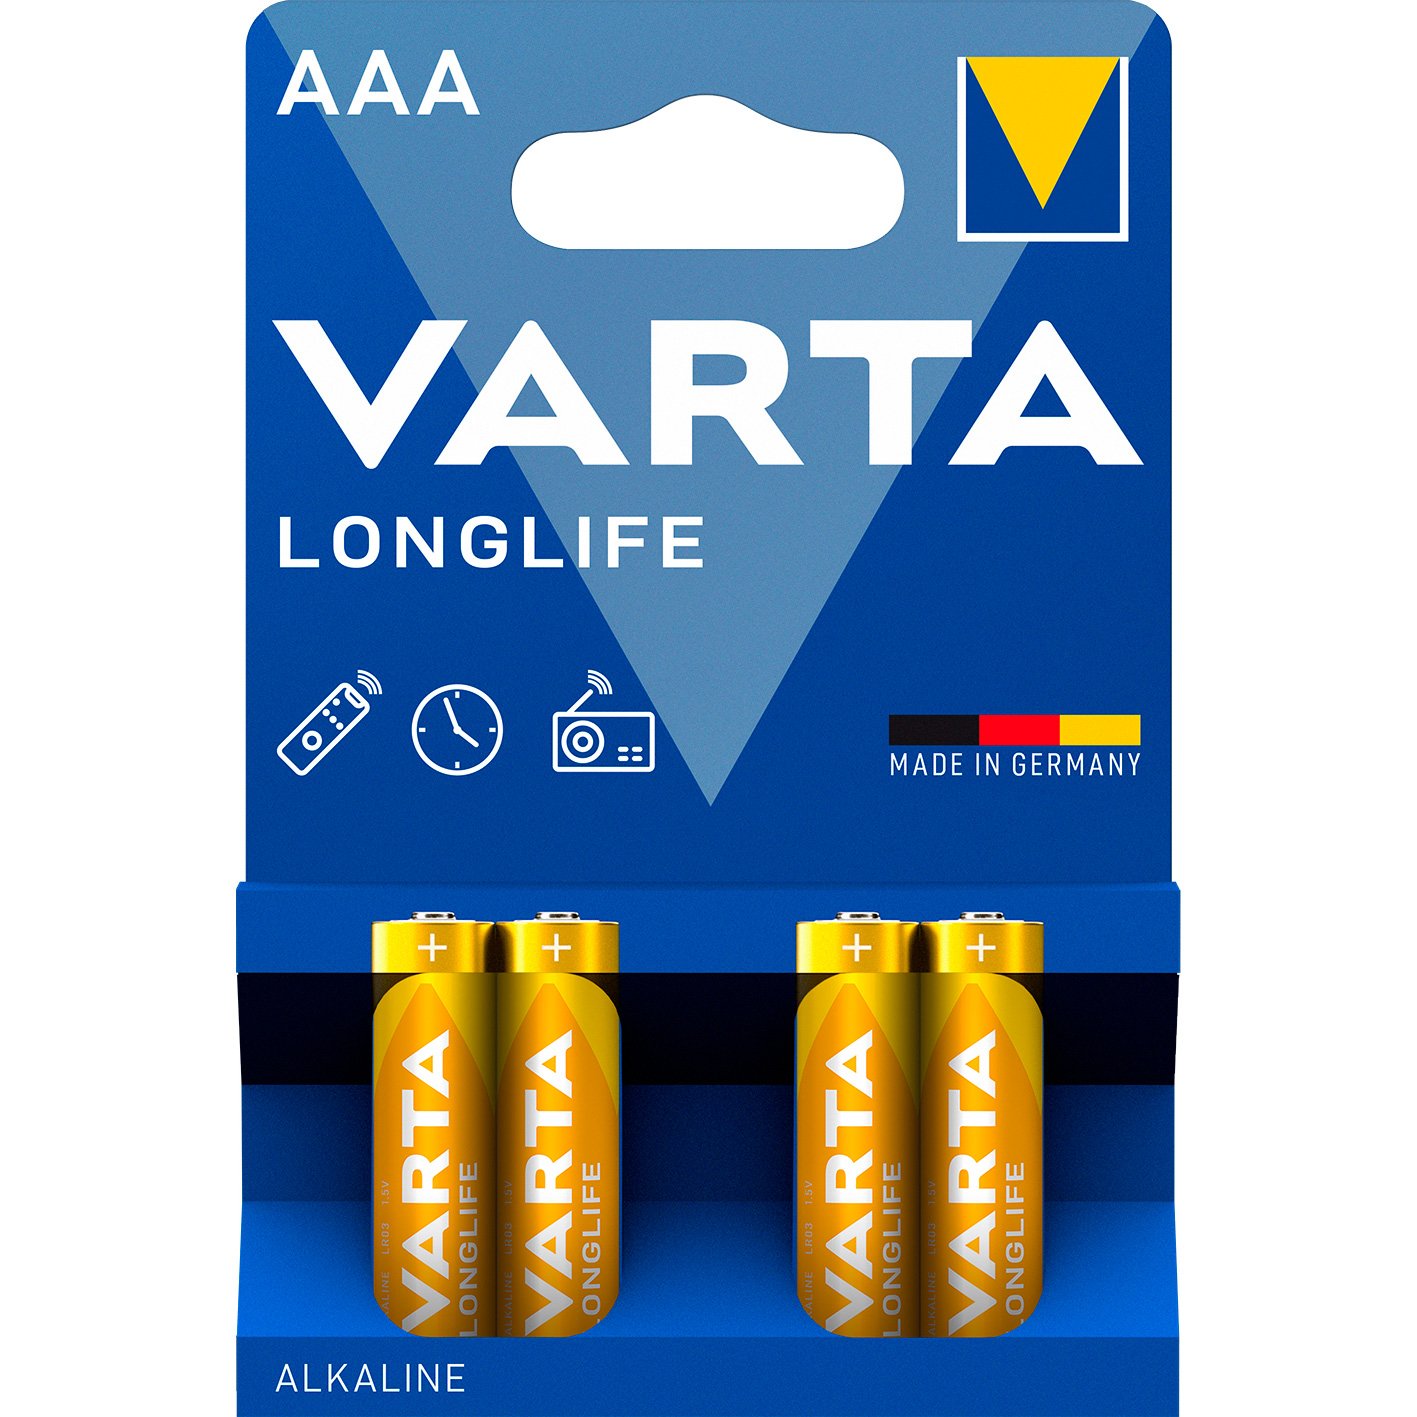 VARTA LongLife batteri AAA/LR03 1.5 v 4 stk